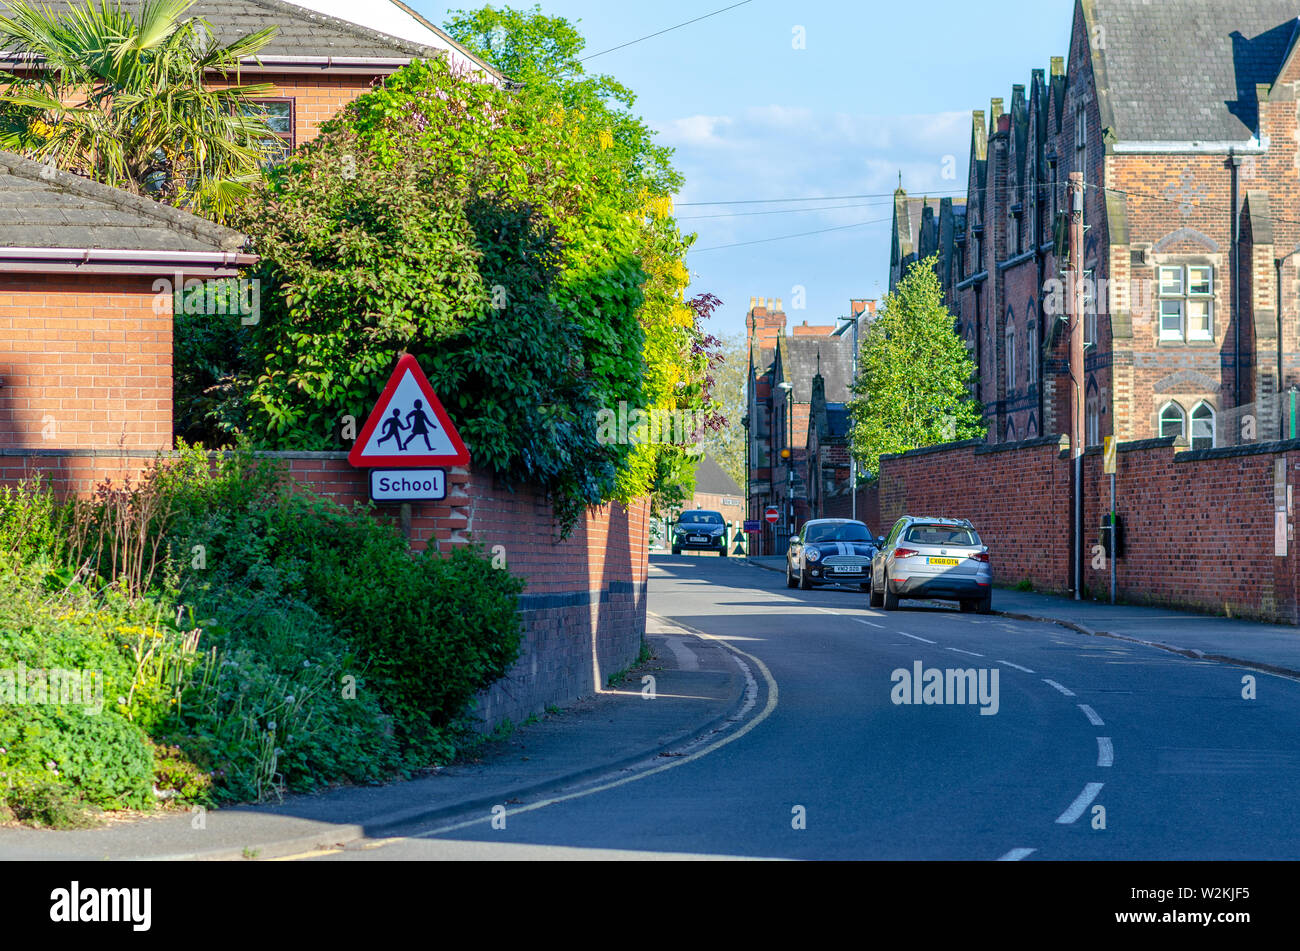 L'immagine di una strada con case di mattoni nella piccola cittadina inglese chiamato Pietra, Staffordshire. Il cartello stradale architettura, bella, blu, mattoni, buil Foto Stock